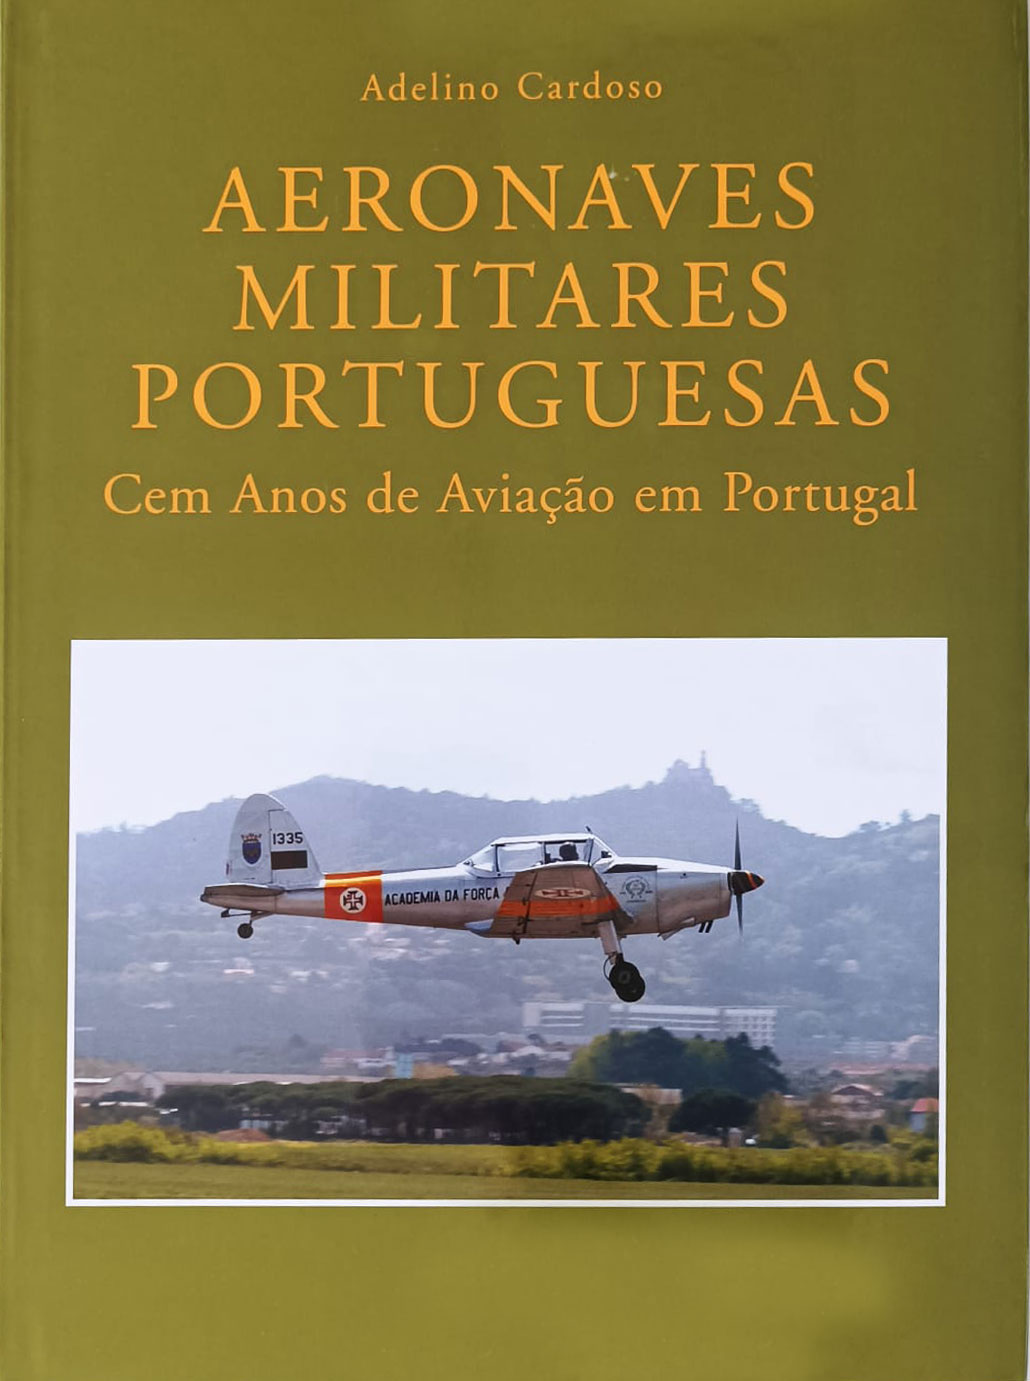 Aeronaves Militares Portuguesas: Cem Anos de Aviao em Portugal por Adelino Cardoso